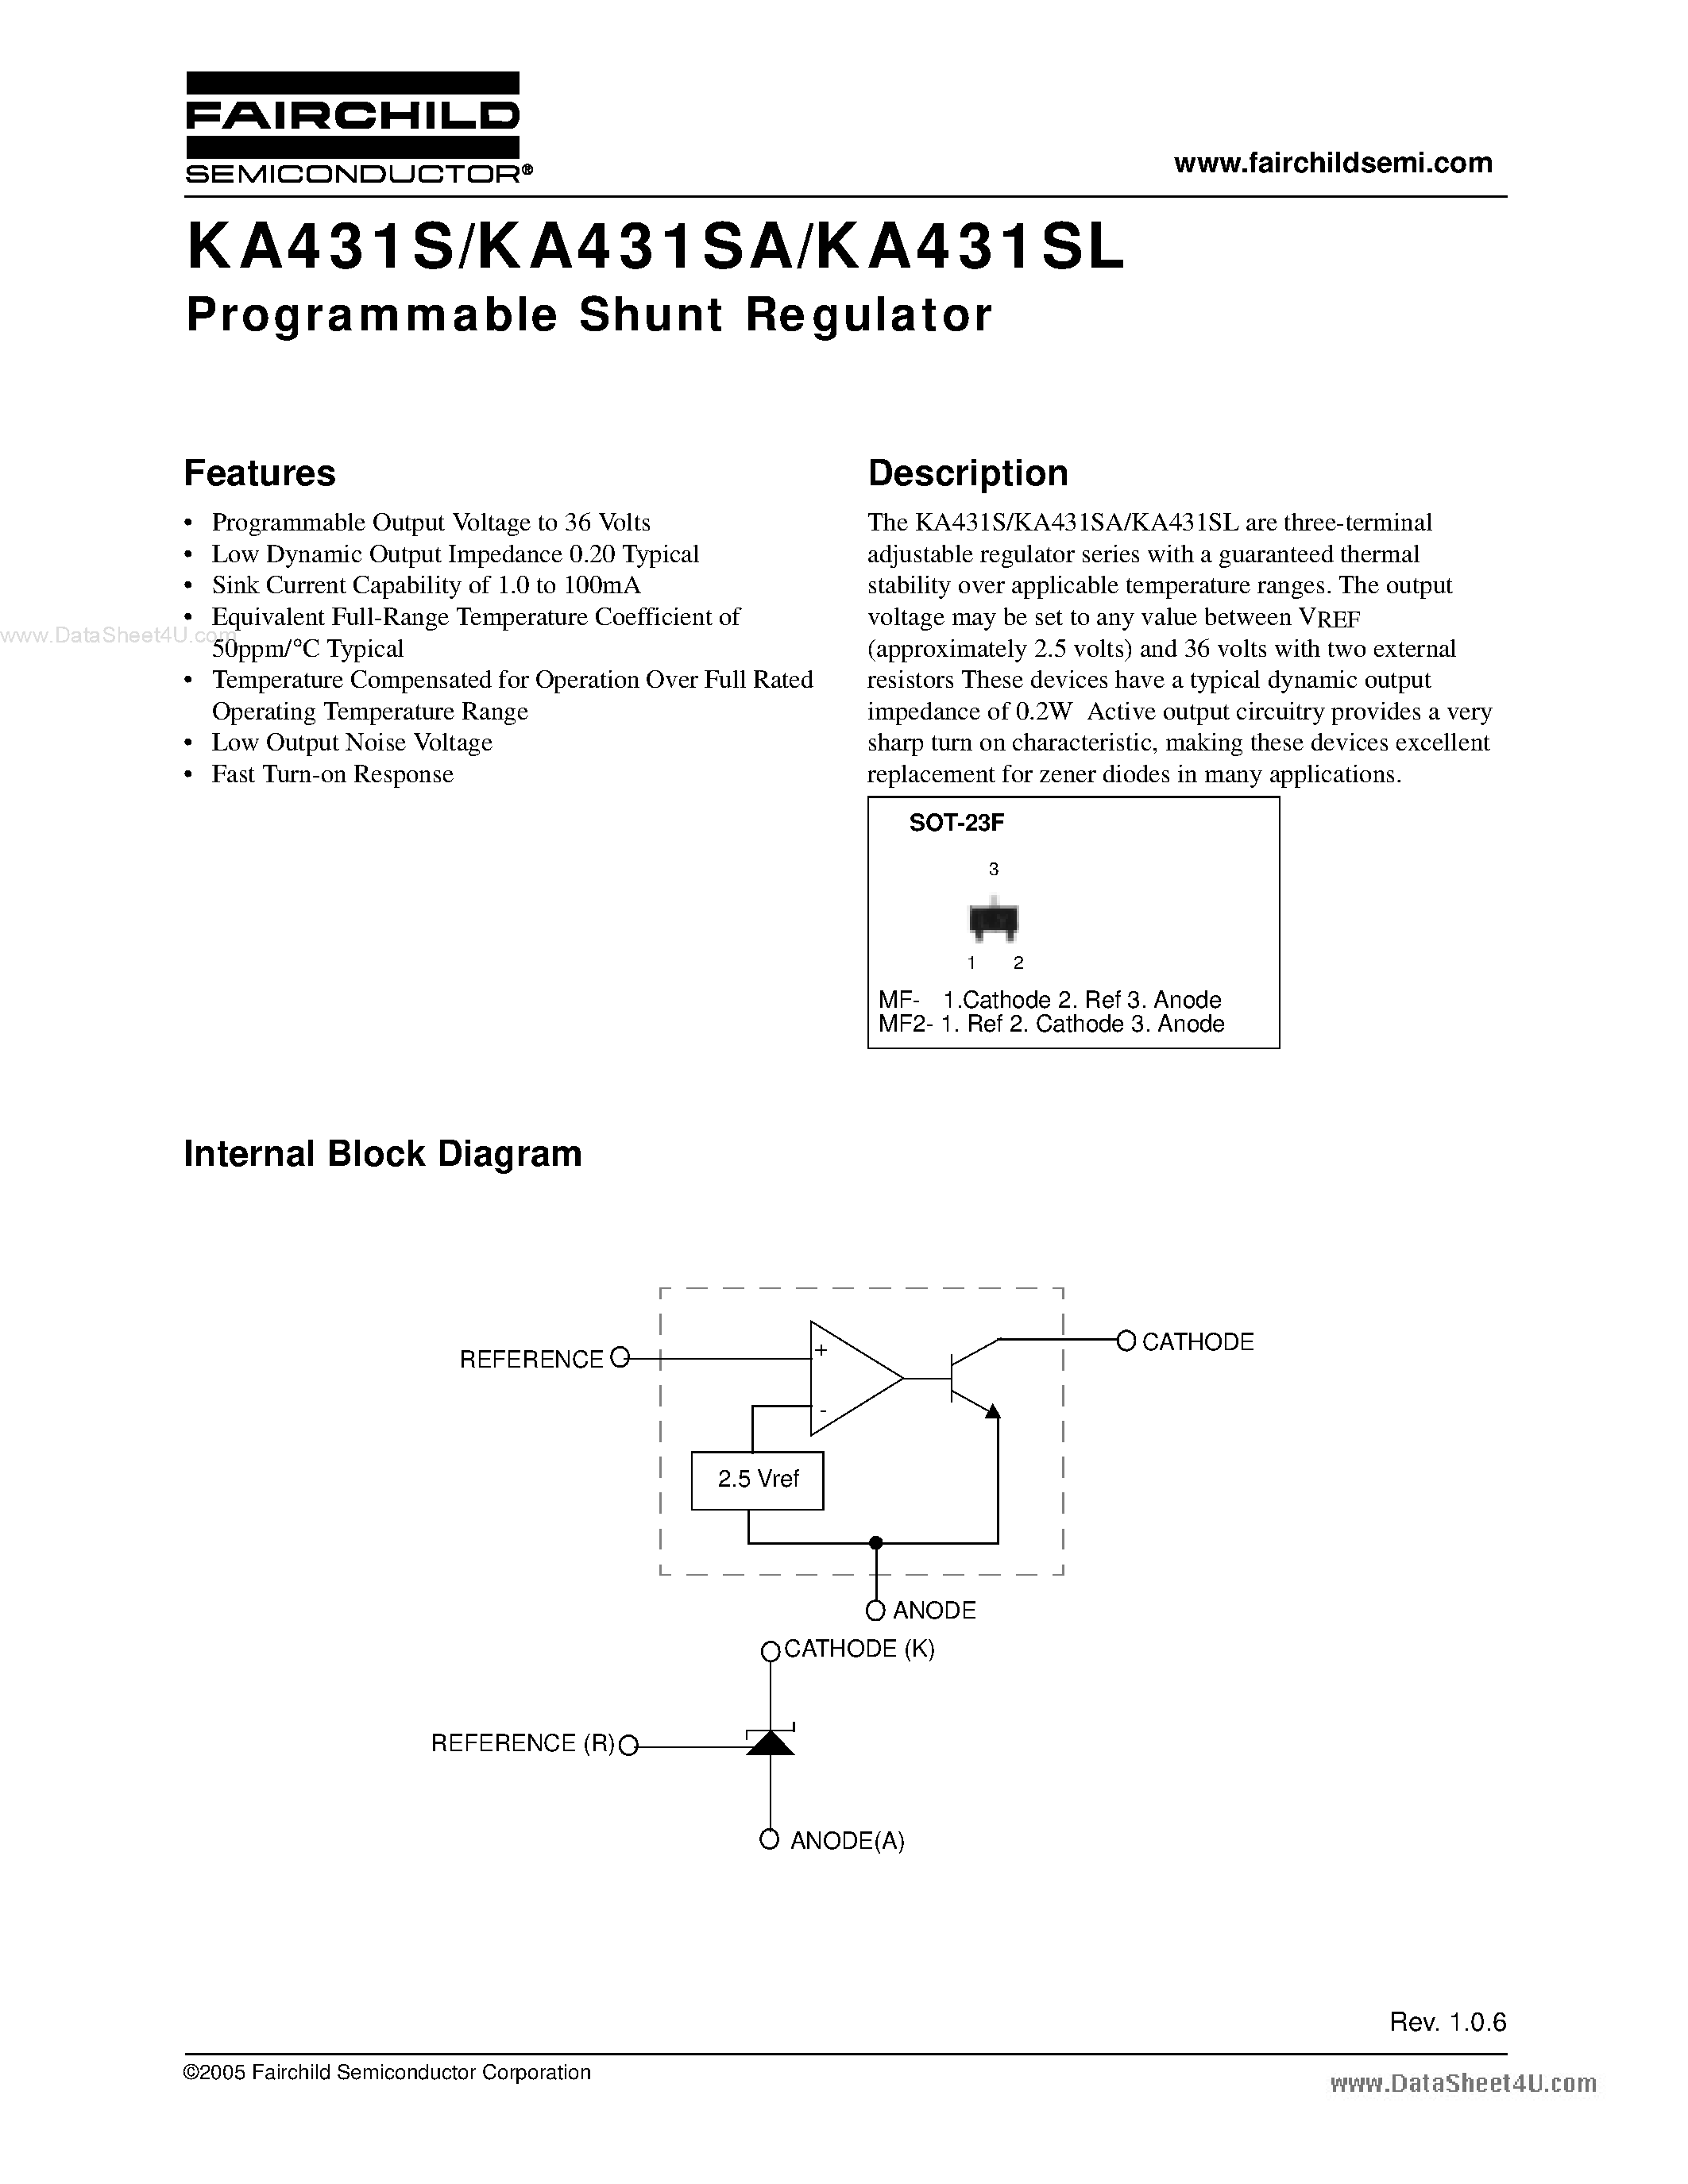 Datasheet KA431SAMF - Programmable Shunt Regulator page 1